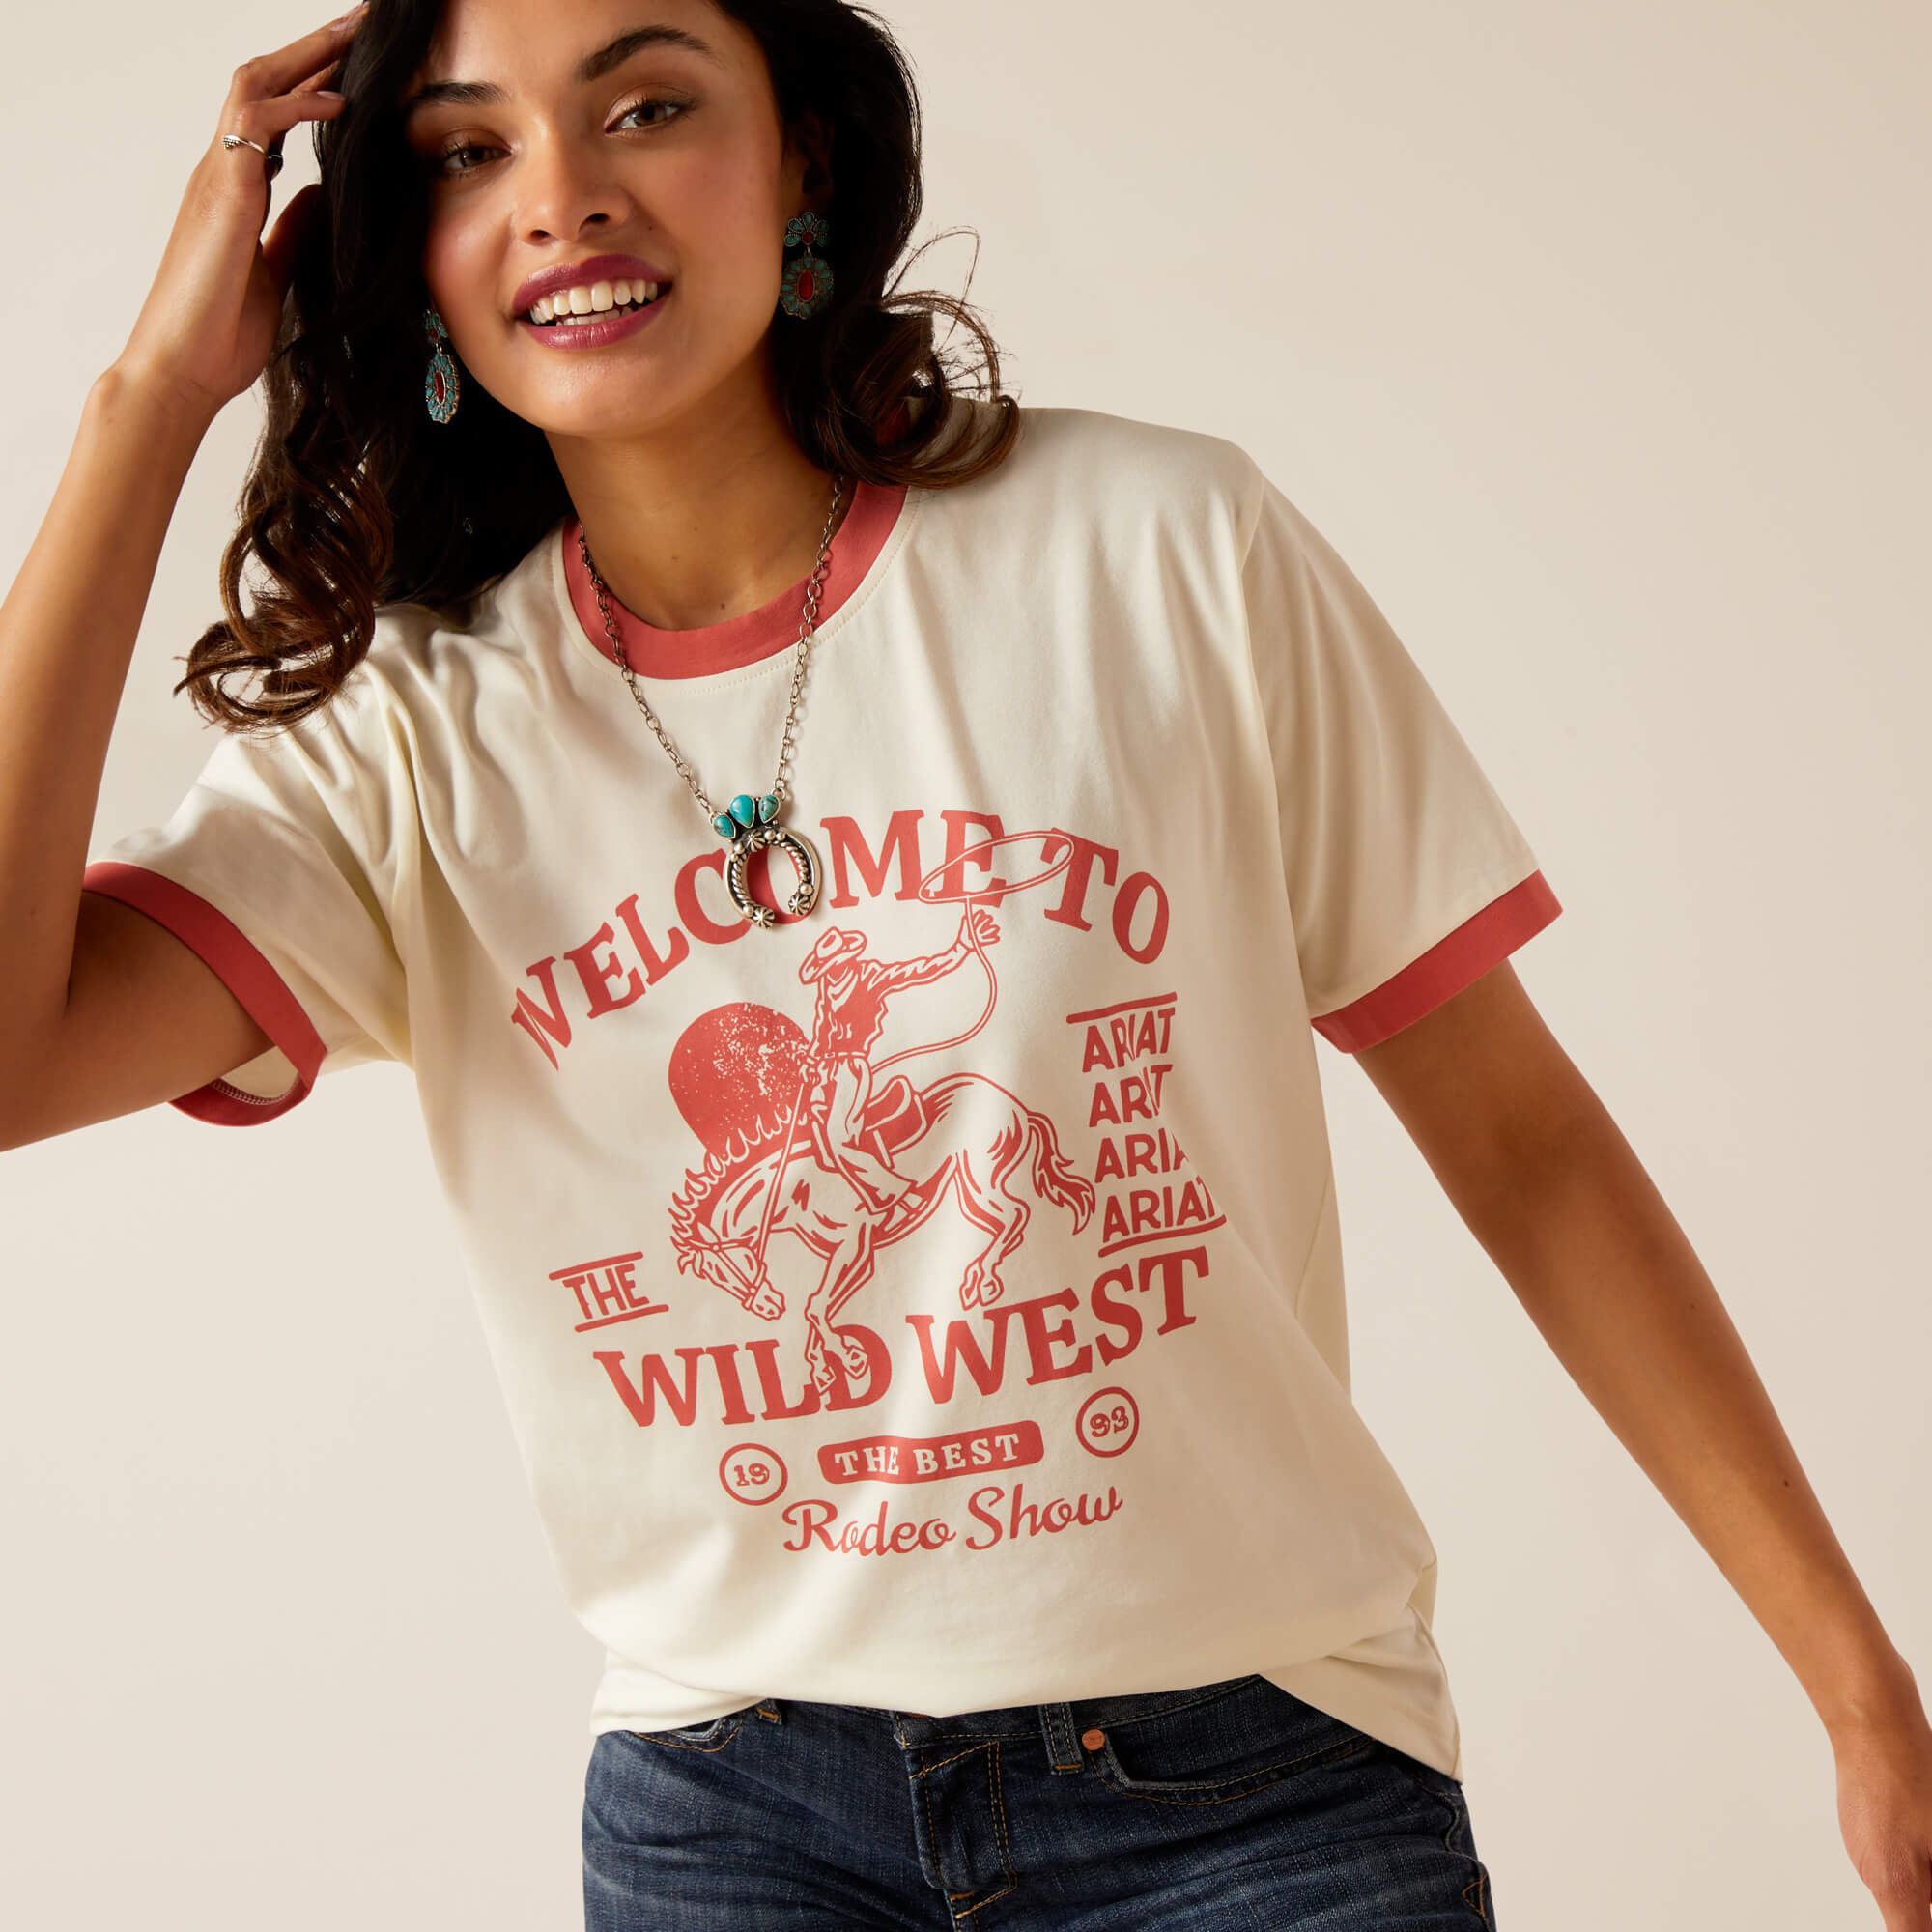 Women's Wild West Show T-Shirt in Coconut Milk, Size: Medium by Ariat